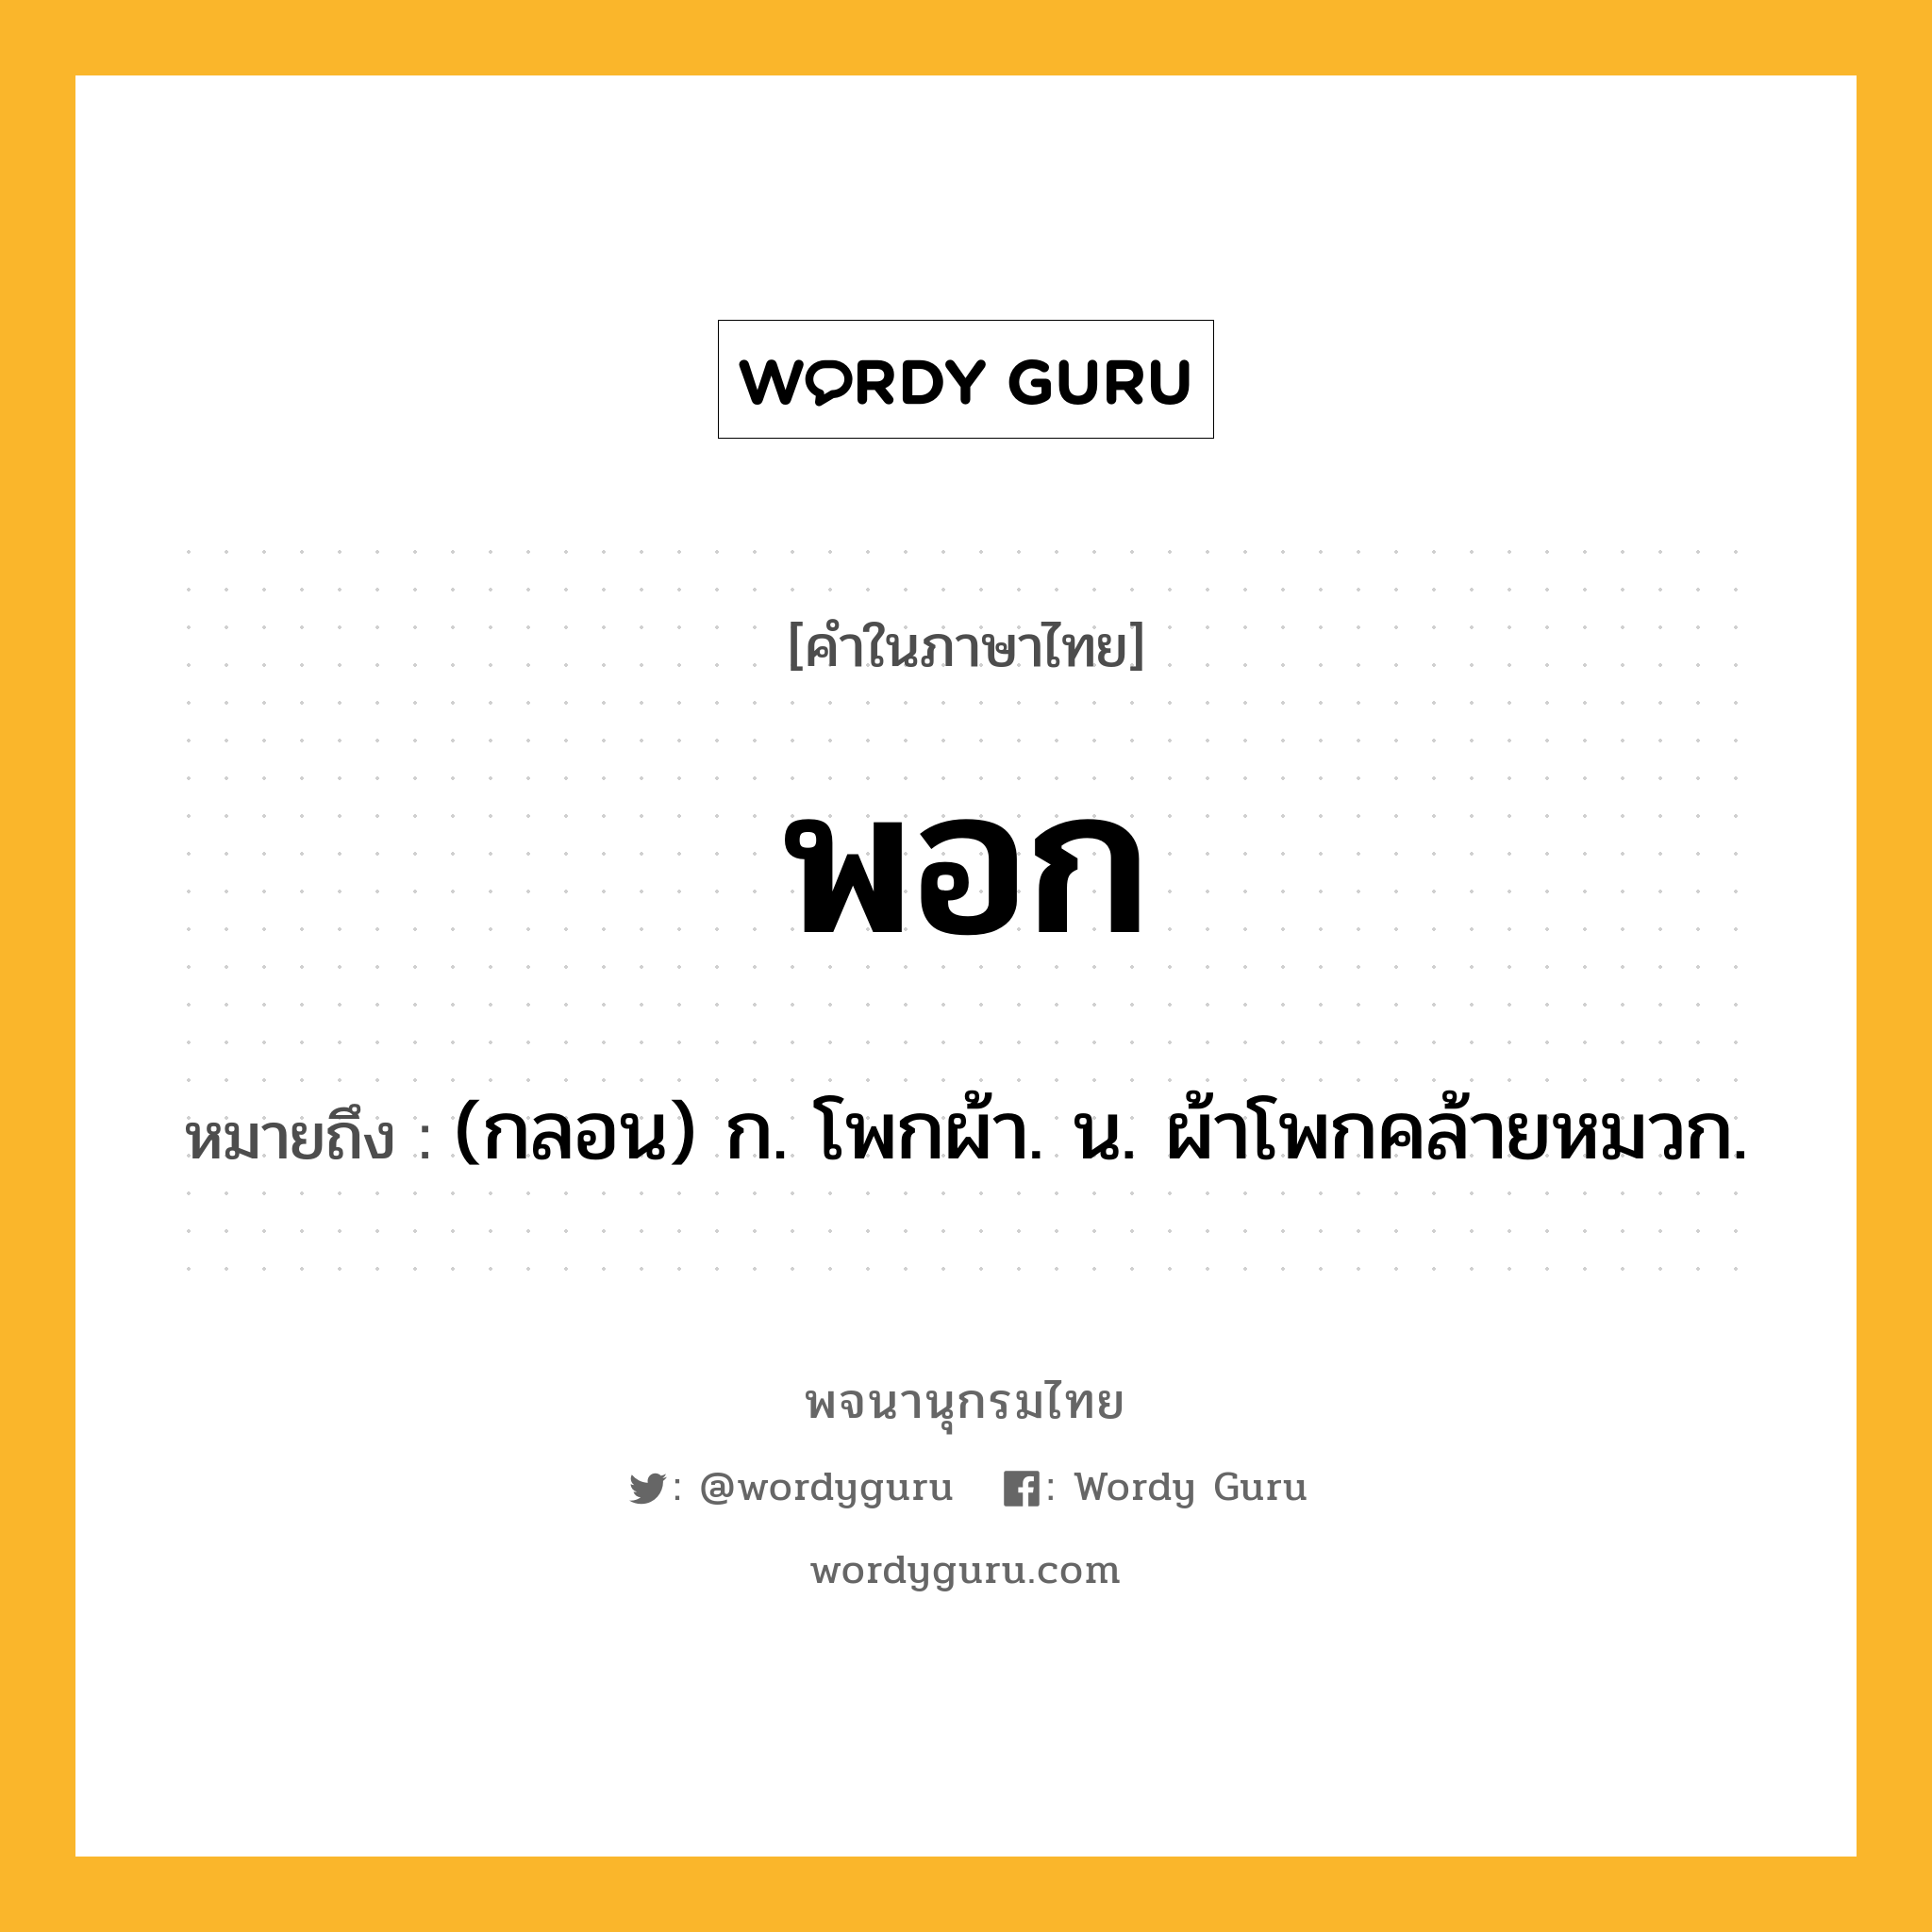 พอก ความหมาย หมายถึงอะไร?, คำในภาษาไทย พอก หมายถึง (กลอน) ก. โพกผ้า. น. ผ้าโพกคล้ายหมวก.